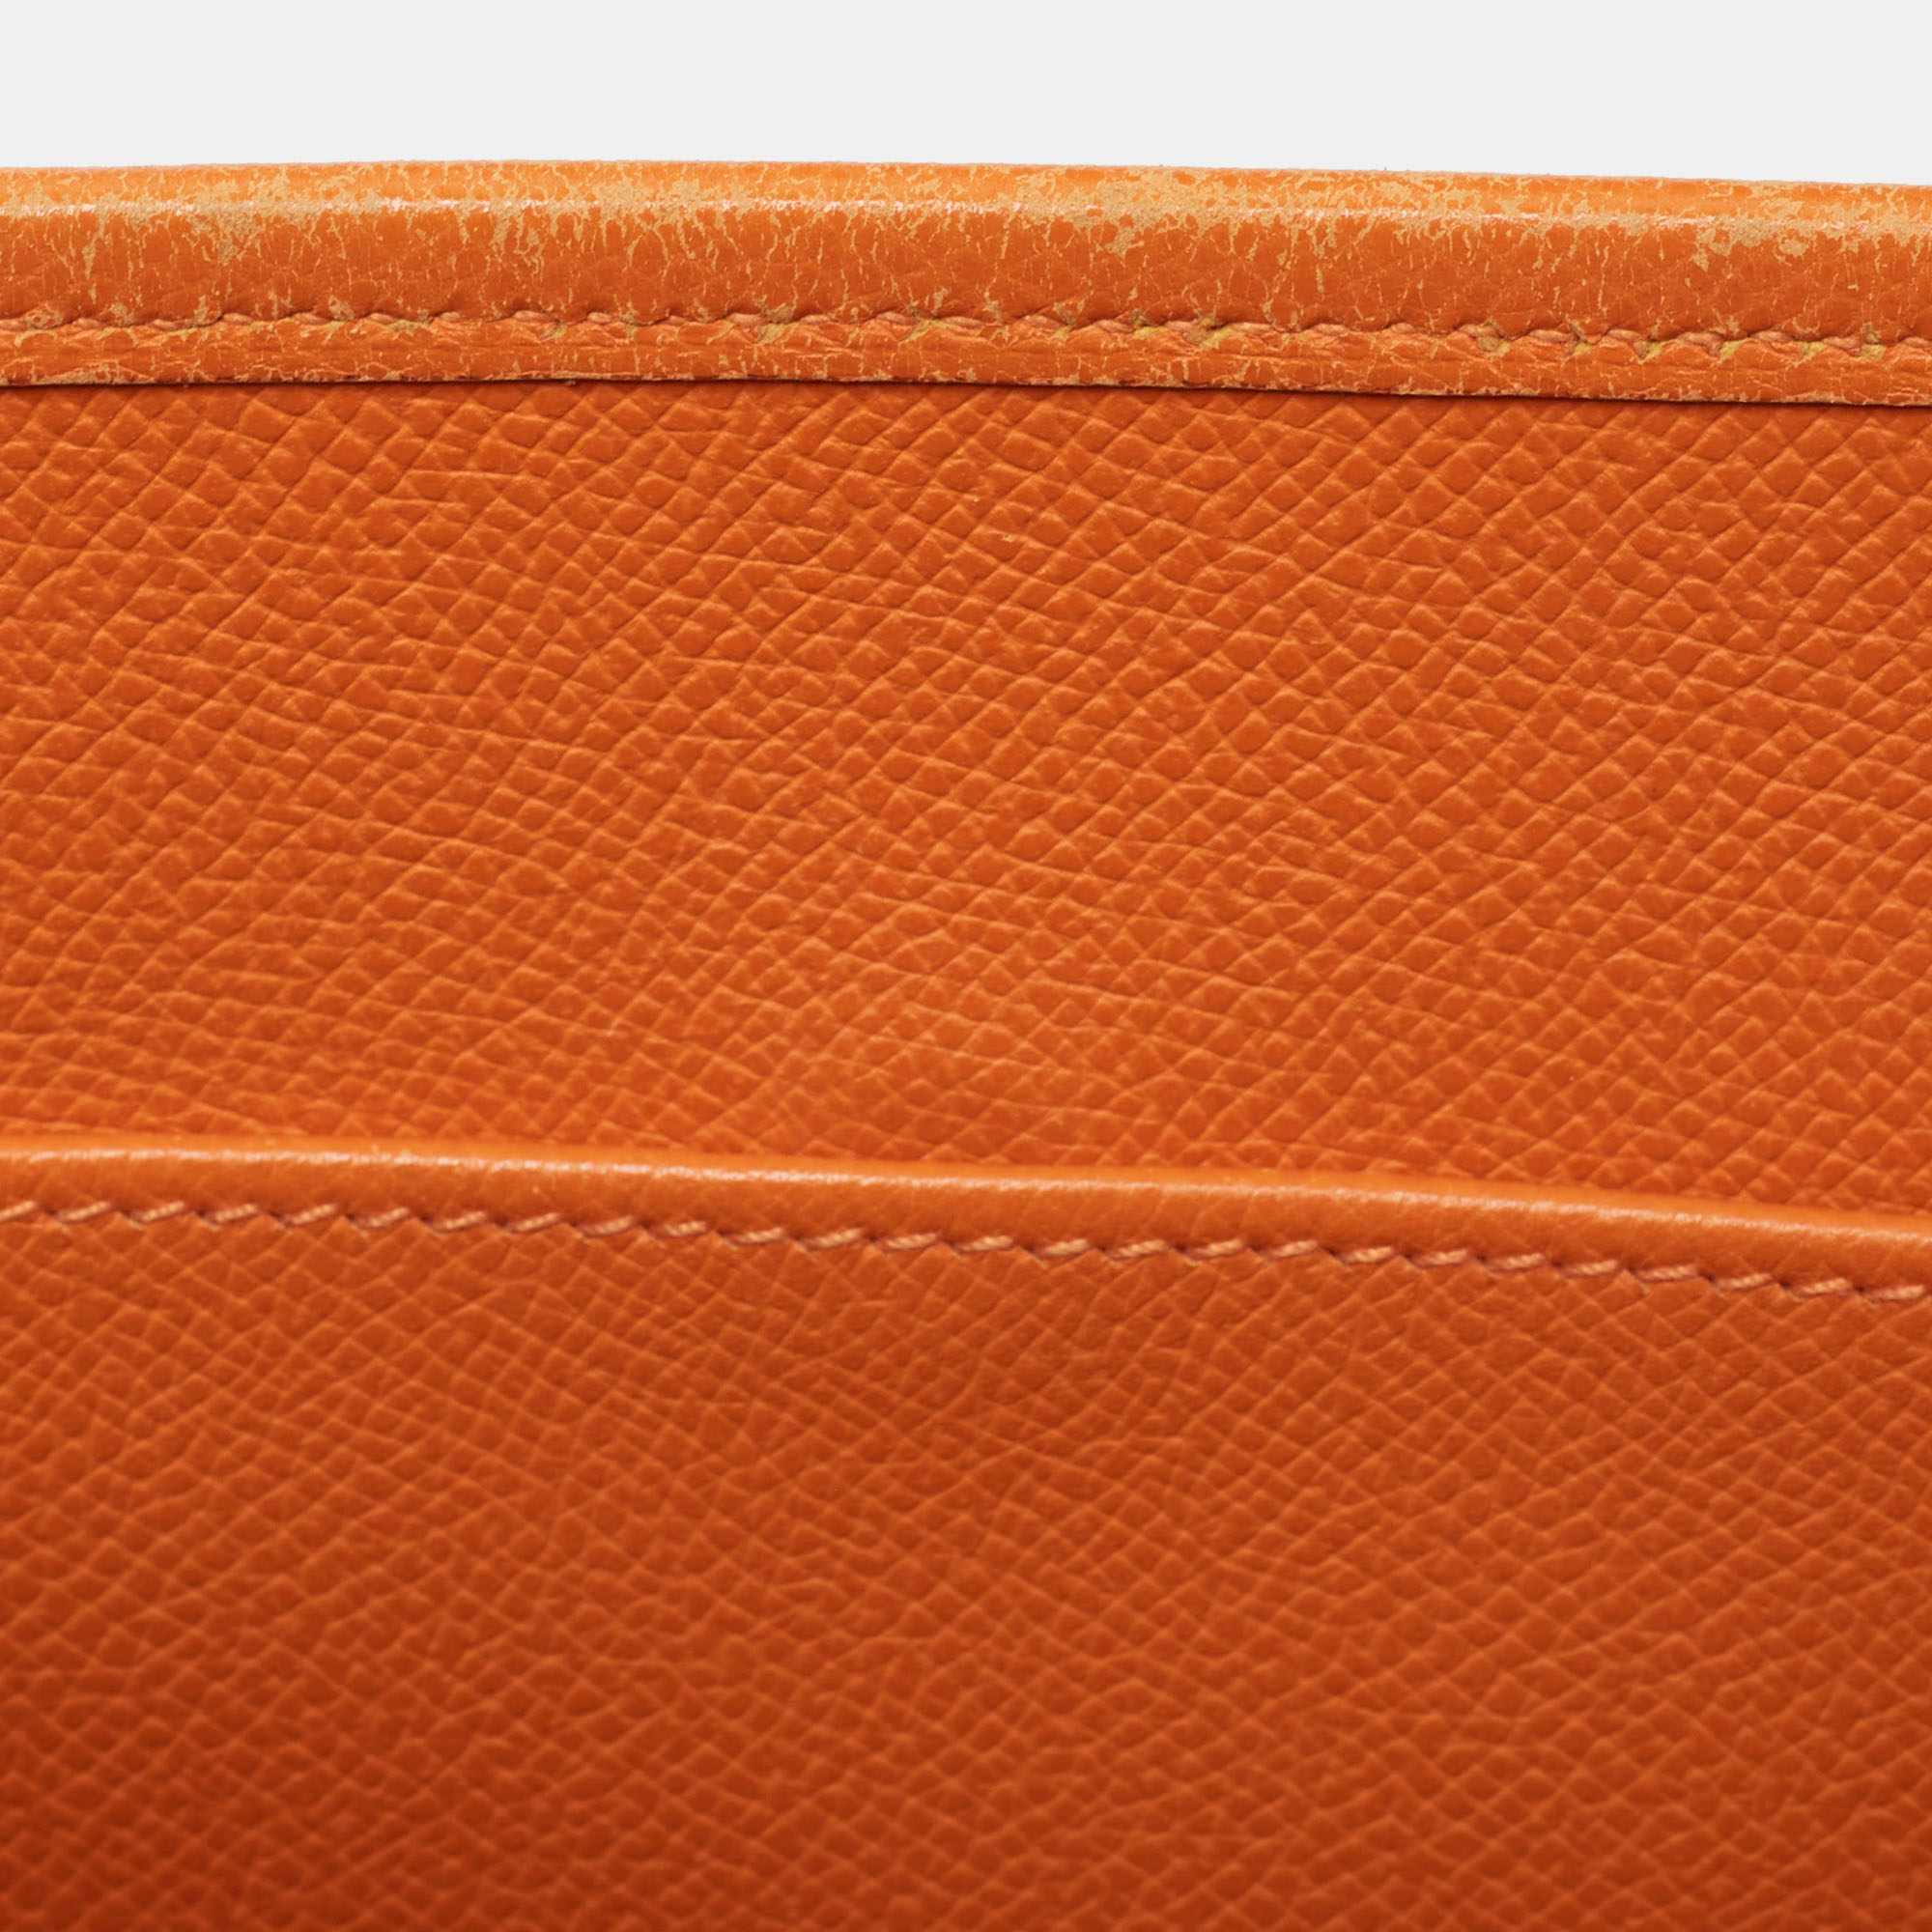 Hermes Orange Epsom Leather Evelyne I PM Bag